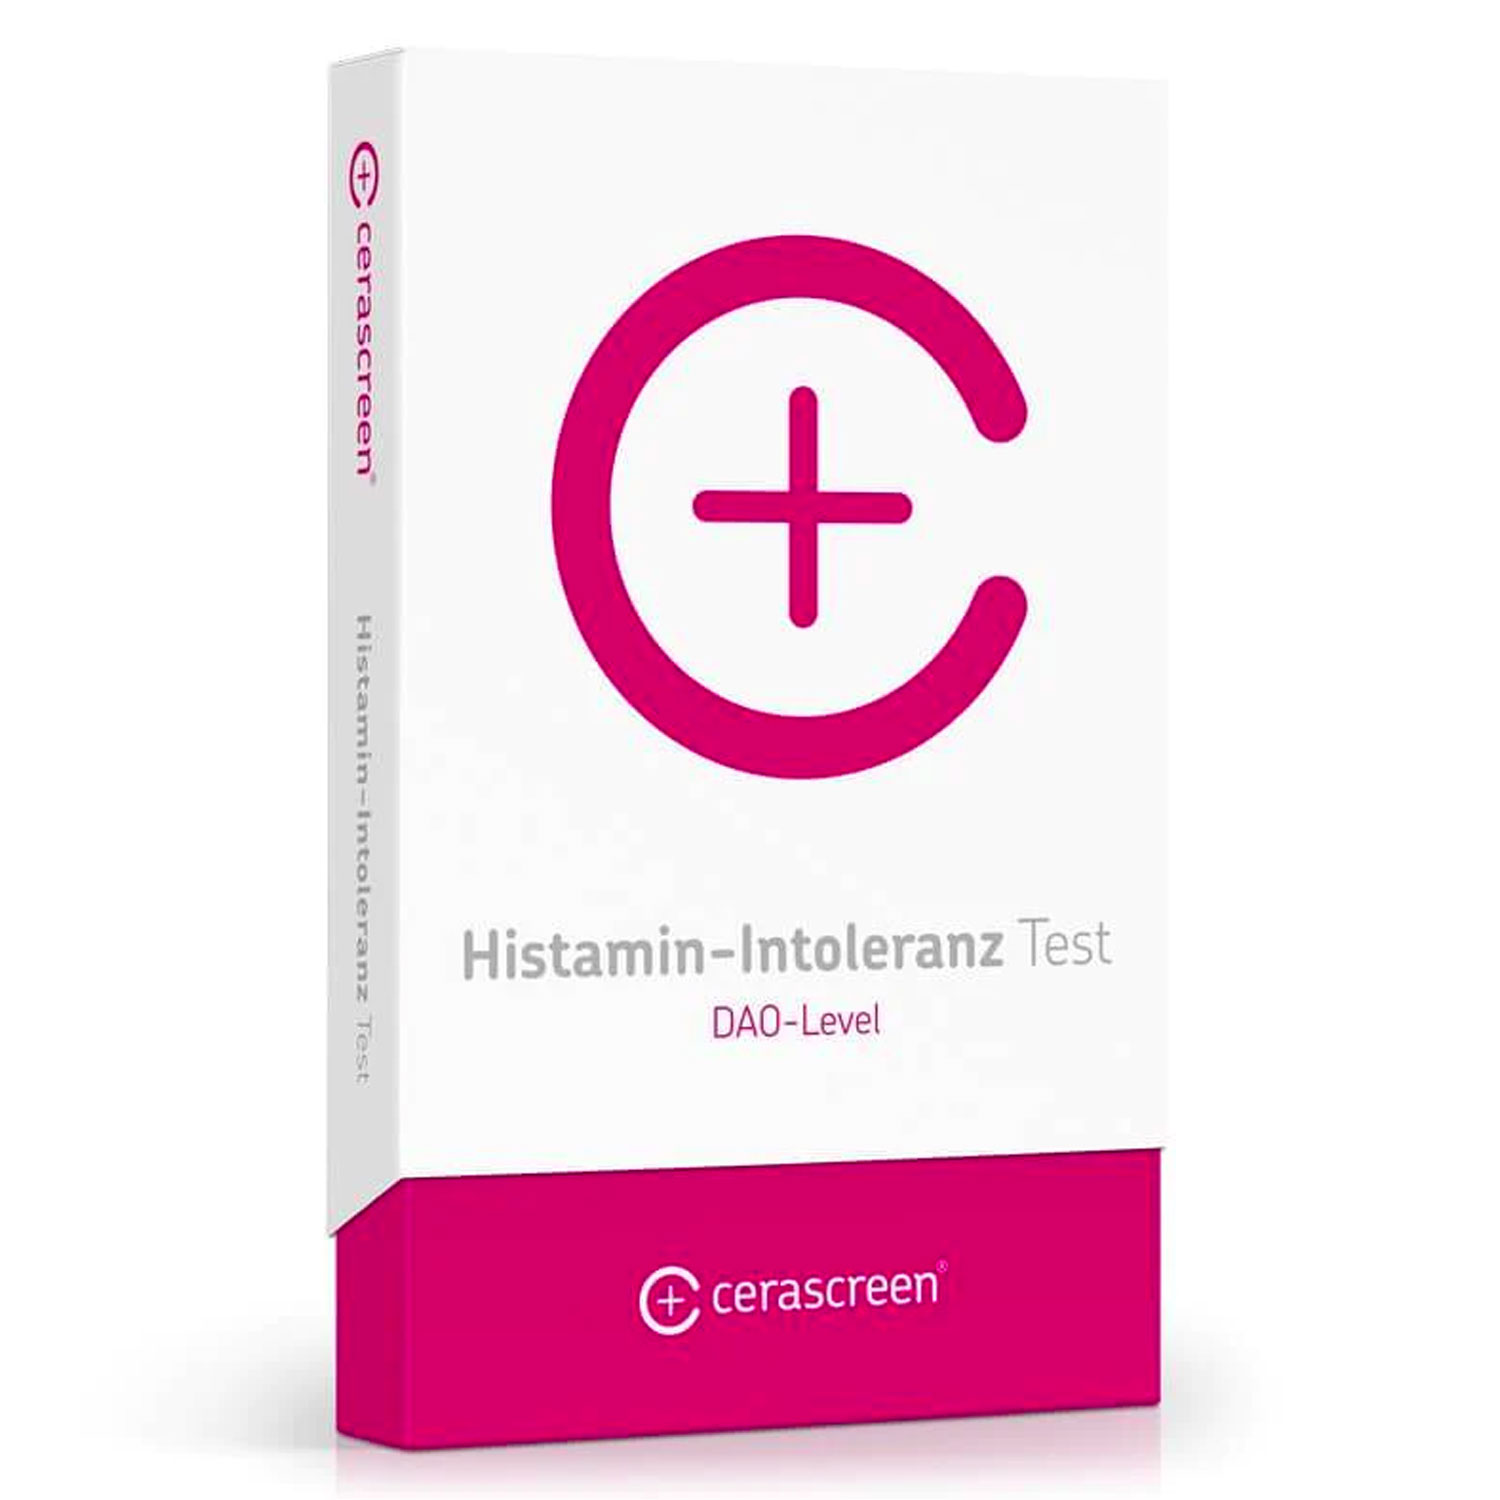 Histamin-Intoleranz Test von cerascreen